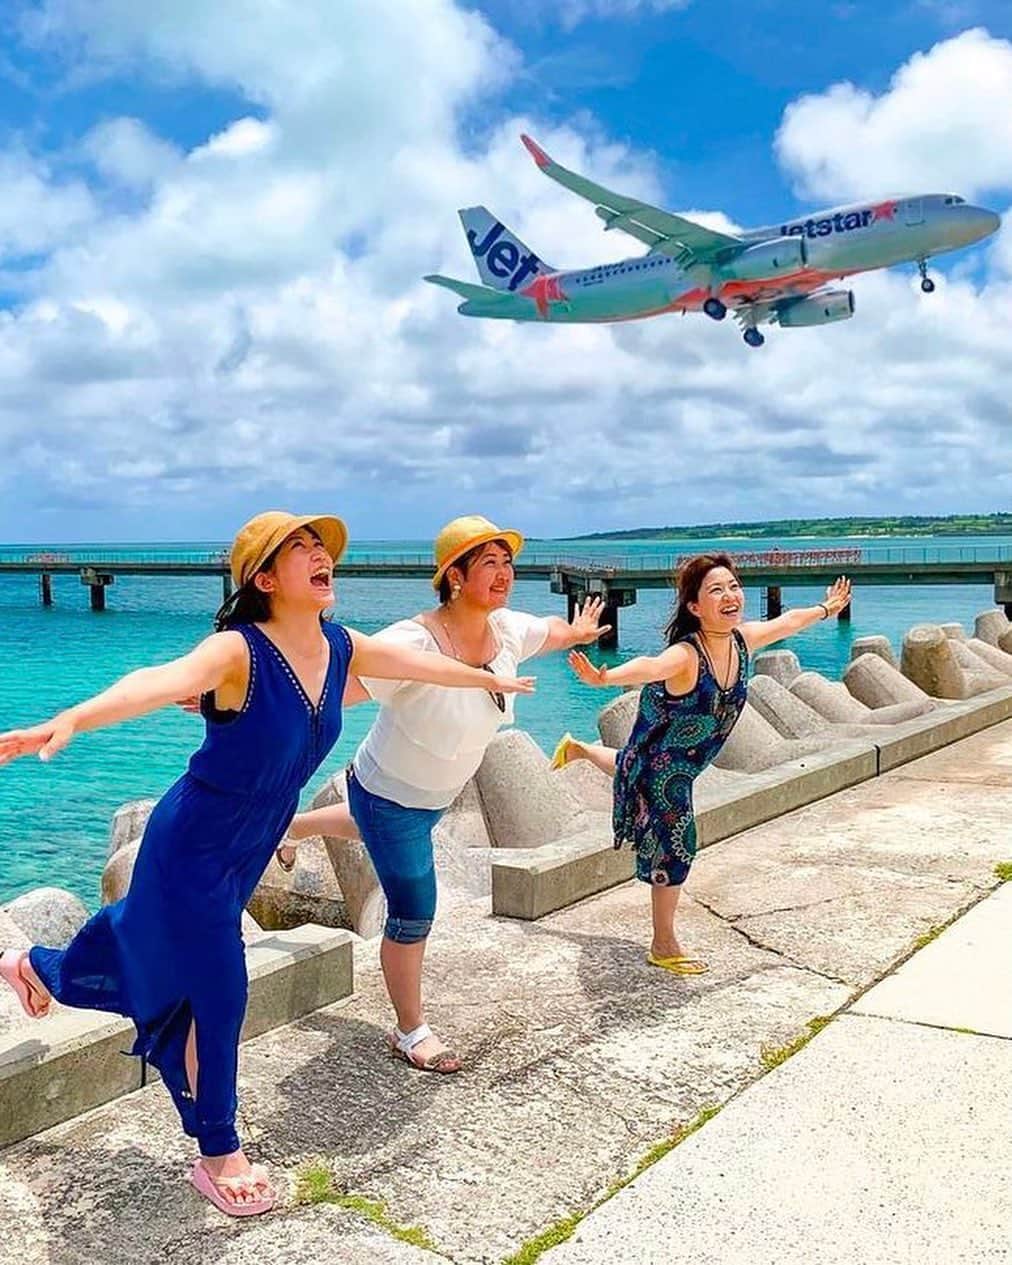 ジェットスター航空のインスタグラム：「行きたい！と思ったら【いいね❤️】 #jettabi_japan #宮古諸島編🌺 飛行機と海のコラボレーション「17END🛫」  下地島空港の先端部分にある「#17END（ワンセブンエンド／じゅうななエンド）」は、宮古諸島の中でも有数の美しさを誇る人気のビーチ。透き通った宮古ブルーの遠浅の海が広がり、干潮時には真っ白な砂浜が現れて、まさに絶景！✨  「17END」という名称は、飛行機の滑走路に由来しており、離着陸する飛行機を間近に見られるスポットとして航空ファンにおすすめの場所なんでスター✈️  【17END】 📍沖縄県宮古島市伊良部佐和田  -------------------------------------------- ／ 📣ジェットスターなら、宮古（下地島）まで ＼ ✈︎東京（成田）から 片道¥7,490〜 ✅3/26より運航再開！好評運航中🛫 --------------------------------------------  ジェットスター・ジャパン公式アカウント（@jetstar_japan）では「“次に行きたい”が見つかる」をテーマに就航地の魅力をご紹介✈️⭐️「#jettabi_japan」をつけて、皆さんのFun&Happyな旅の思い出をぜひご投稿ください！素敵なお写真は、公式アカウントでご紹介させていただきます♪  ⭐️Special thanks📸 by @nyanyao_san（1枚目）、 @kira.__.k （2枚目）、 @arielyuka1011（3枚目）、 @yuuu_photo （4枚目） --------------------------------------------  ※運賃はエコノミークラス「Starter」。支払手数料、空港使用料等が別途必要です。受託手荷物の料金は含まれません。諸条件が適用されます。 ※就航地のご紹介内容に関する最新情報は、下記の参照サイト等でご確認ください。 -------------------------------------------- 【参照サイト】 沖縄観光情報WEBサイト「おきなわ物語」 --------------------------------------------  #宮古島 #宮古 #宮古諸島 #宮古島観光 #宮古島旅行 #沖縄 #沖縄旅行 #沖縄観光 #宮古島観光スポット #沖縄の海 #ジェットスター #jetstar #jetstar_japan #LCC #trip #旅好きな人と繋がりたい #インスタ映え #絶景スポット #okinawa #okinawajapan #ワンセブンエンド #17end #beach #runway #runwayend #sea」